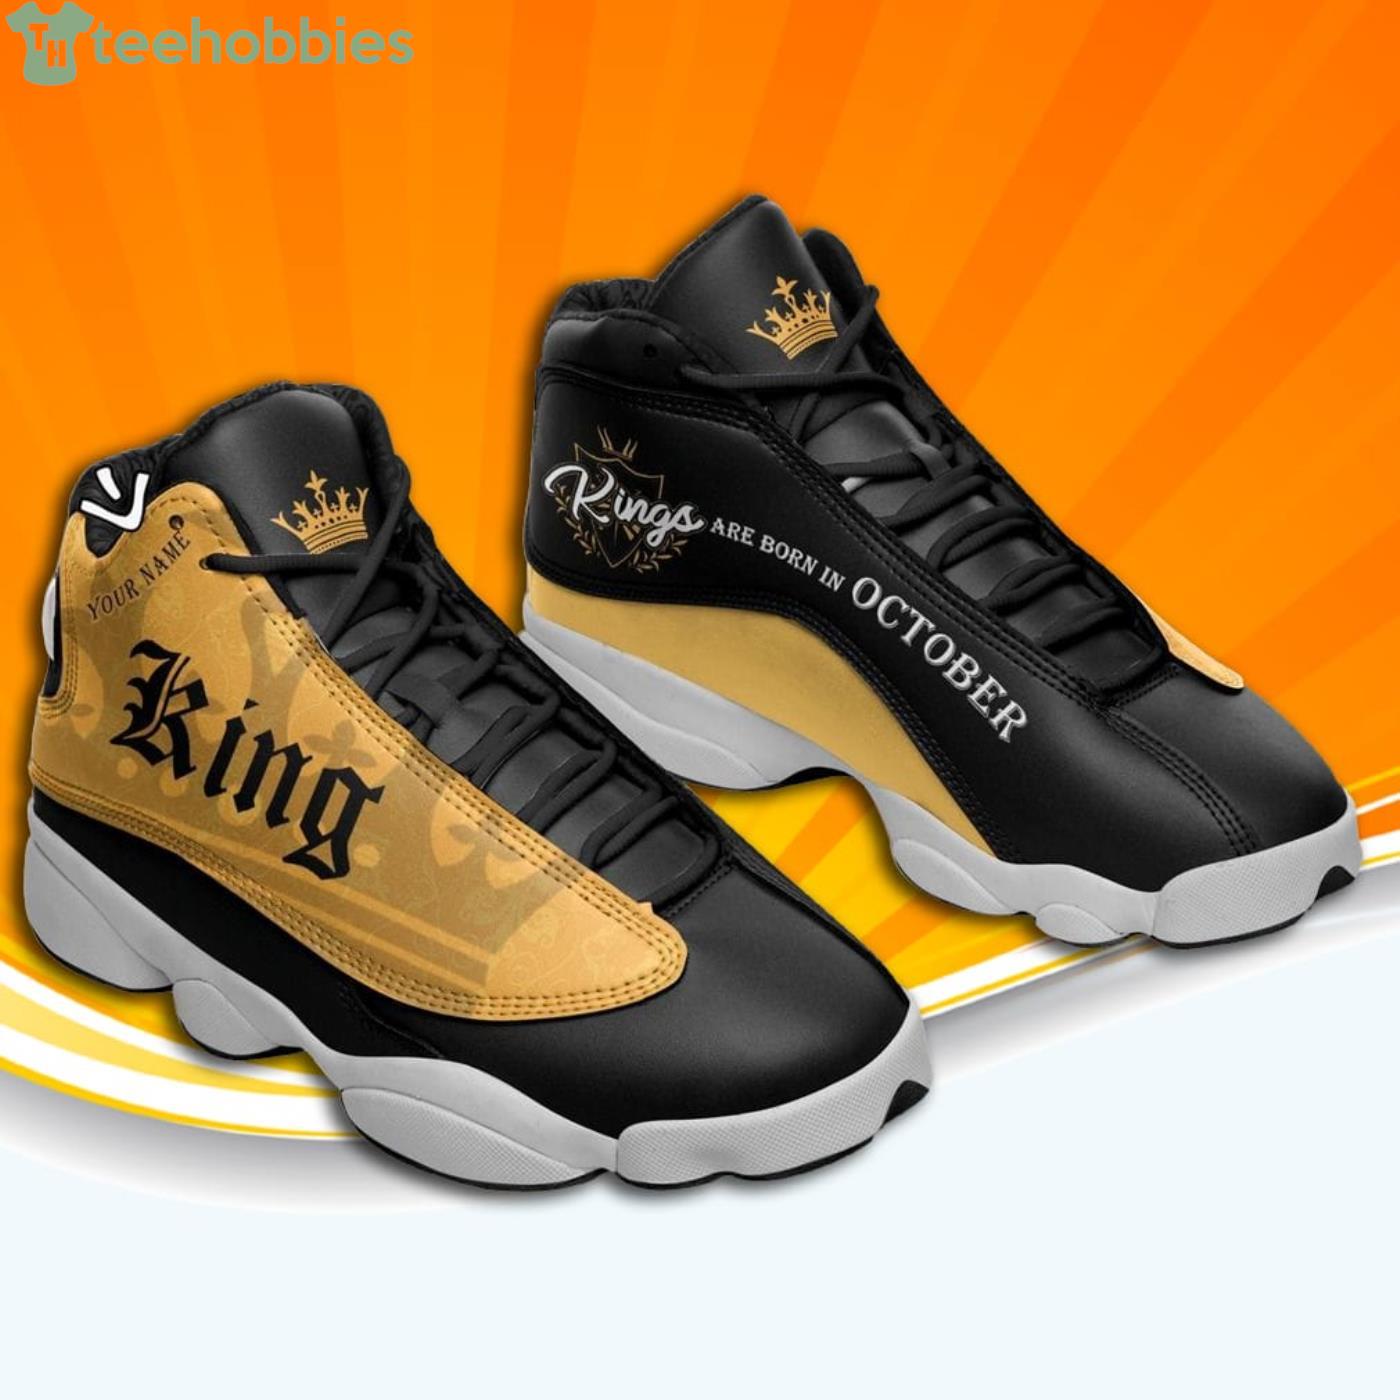 Personalised Los Angeles Kings Air Jordan 13 Shoes - USALast